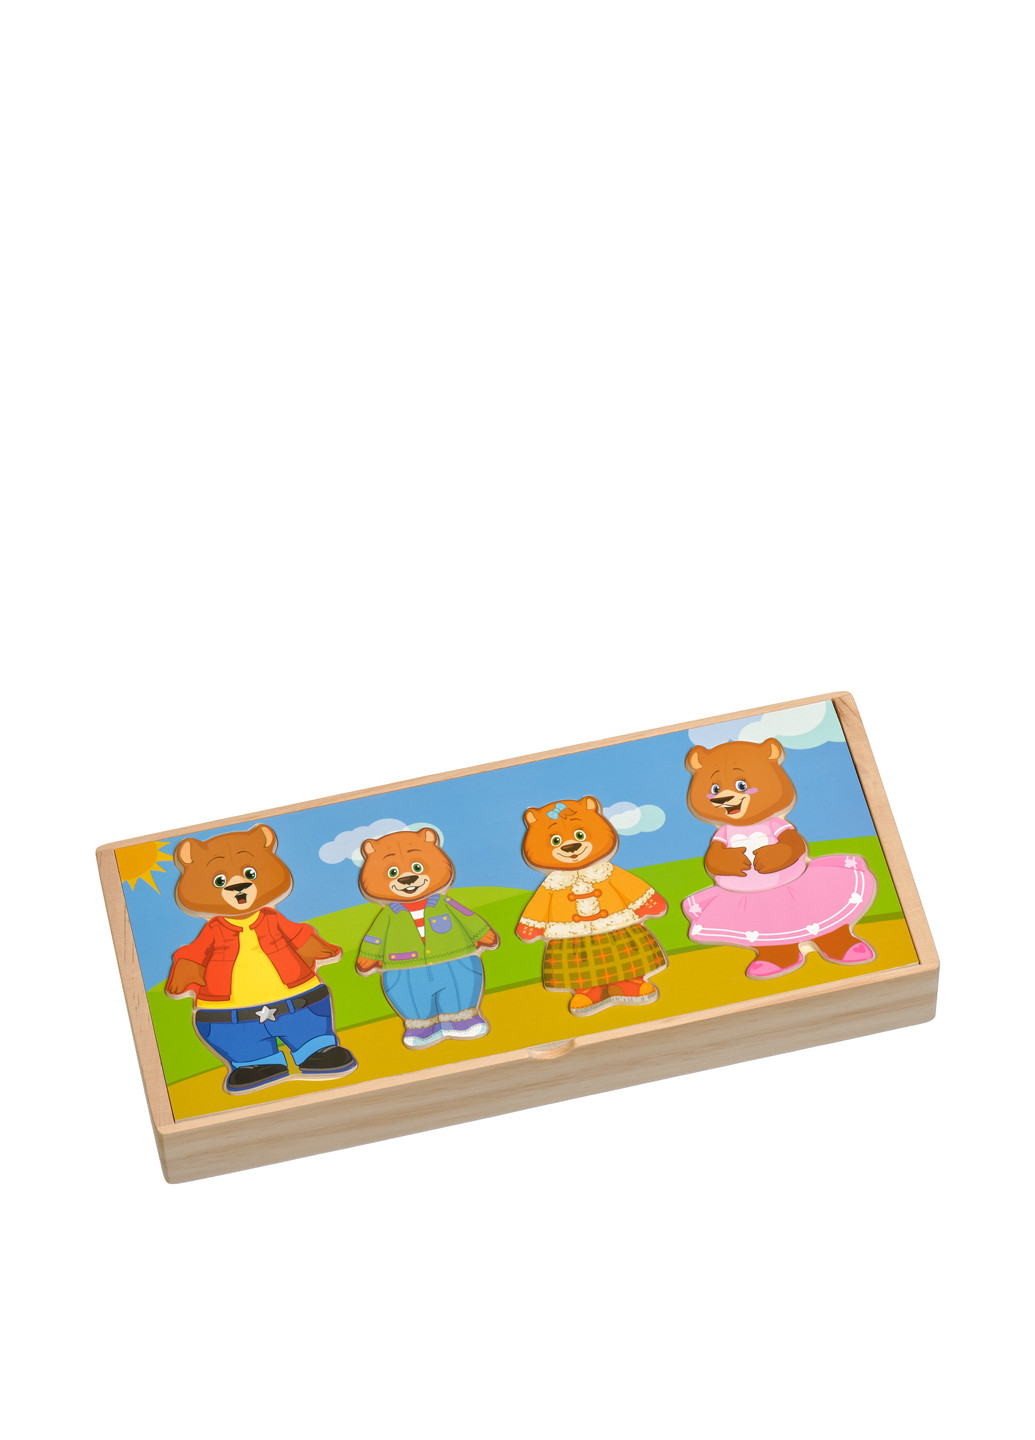 Игровой набор Четыре медведя, 31.5x13.5x3.5 см Игрушки из дерева (81043310)